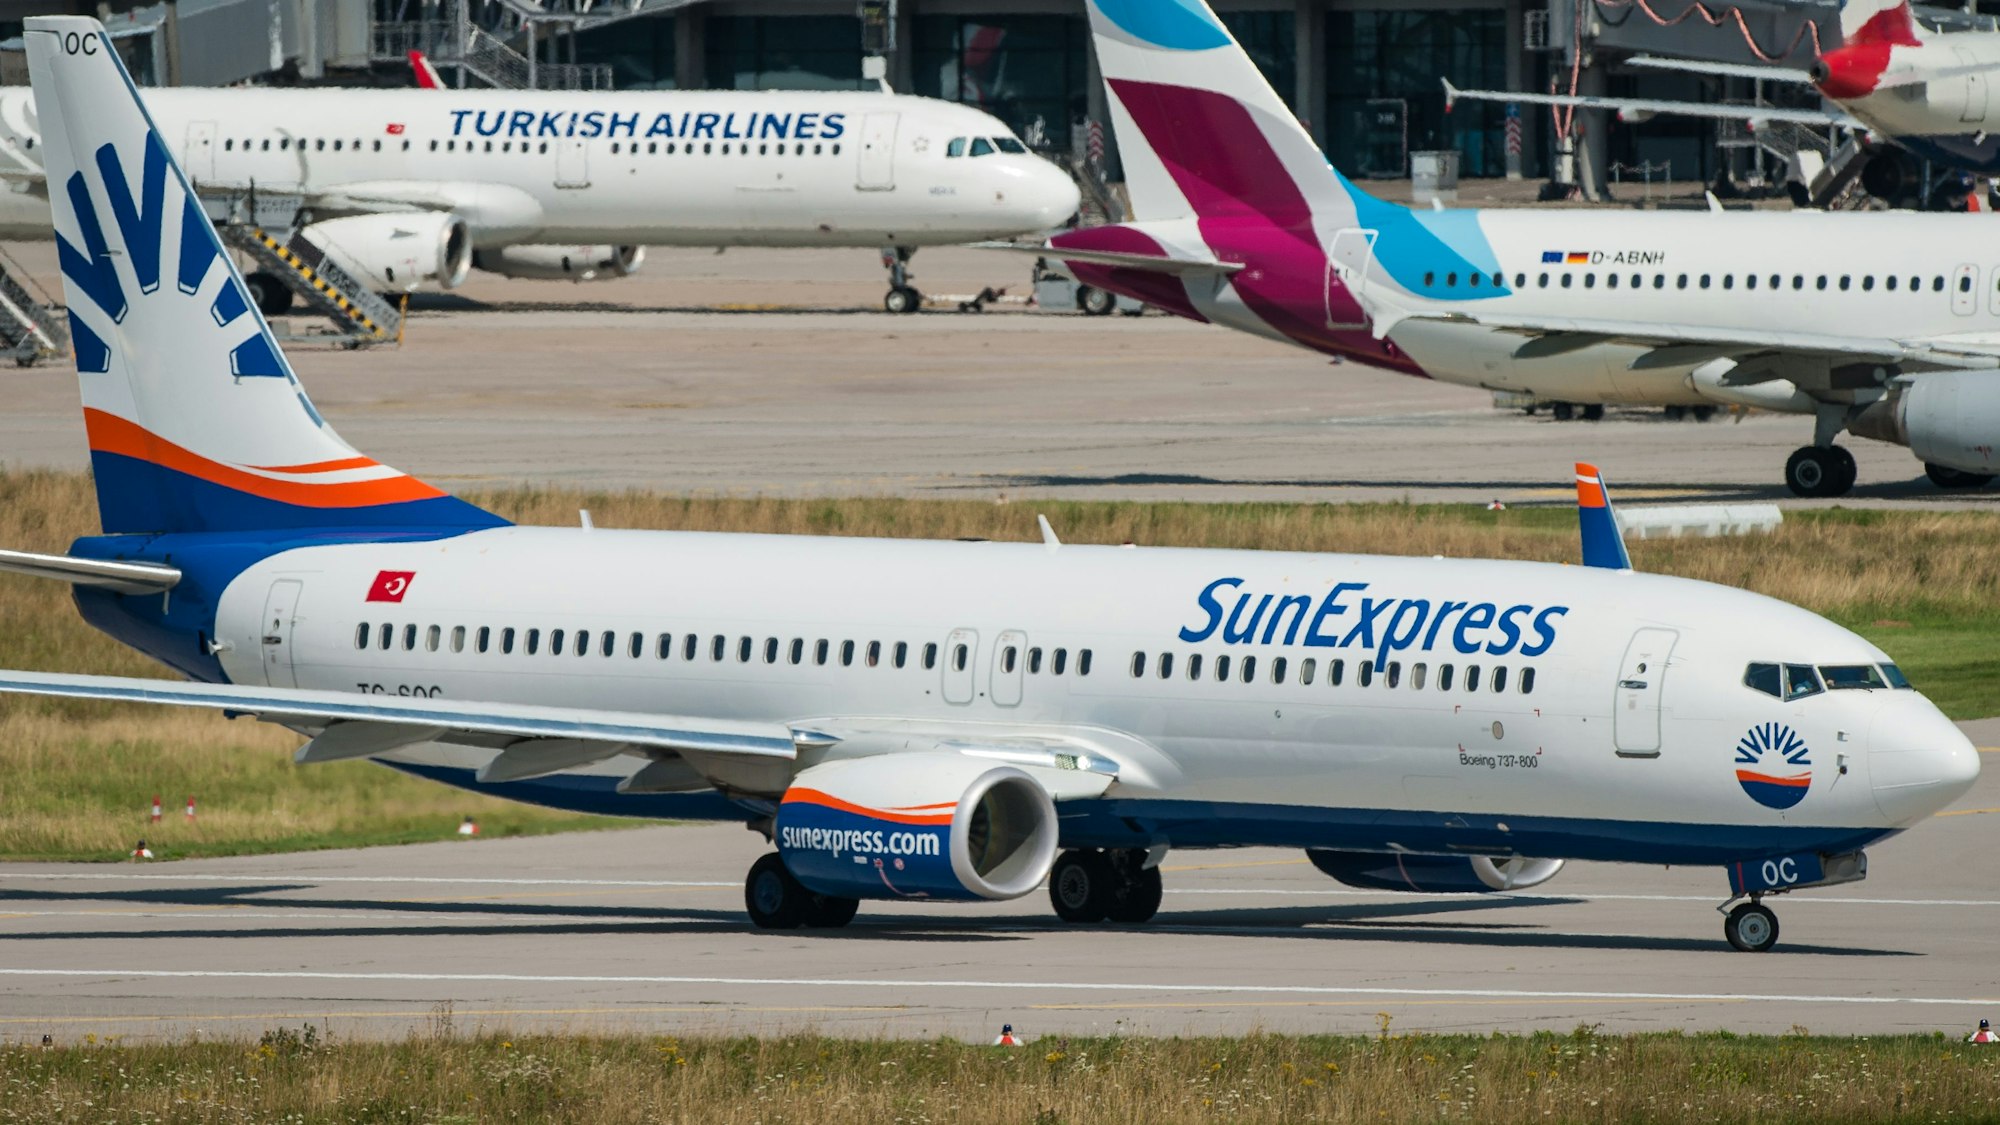 Ein Flugzeug der türkischen Fluggesellschaft SunExpress auf dem Rollfeld.